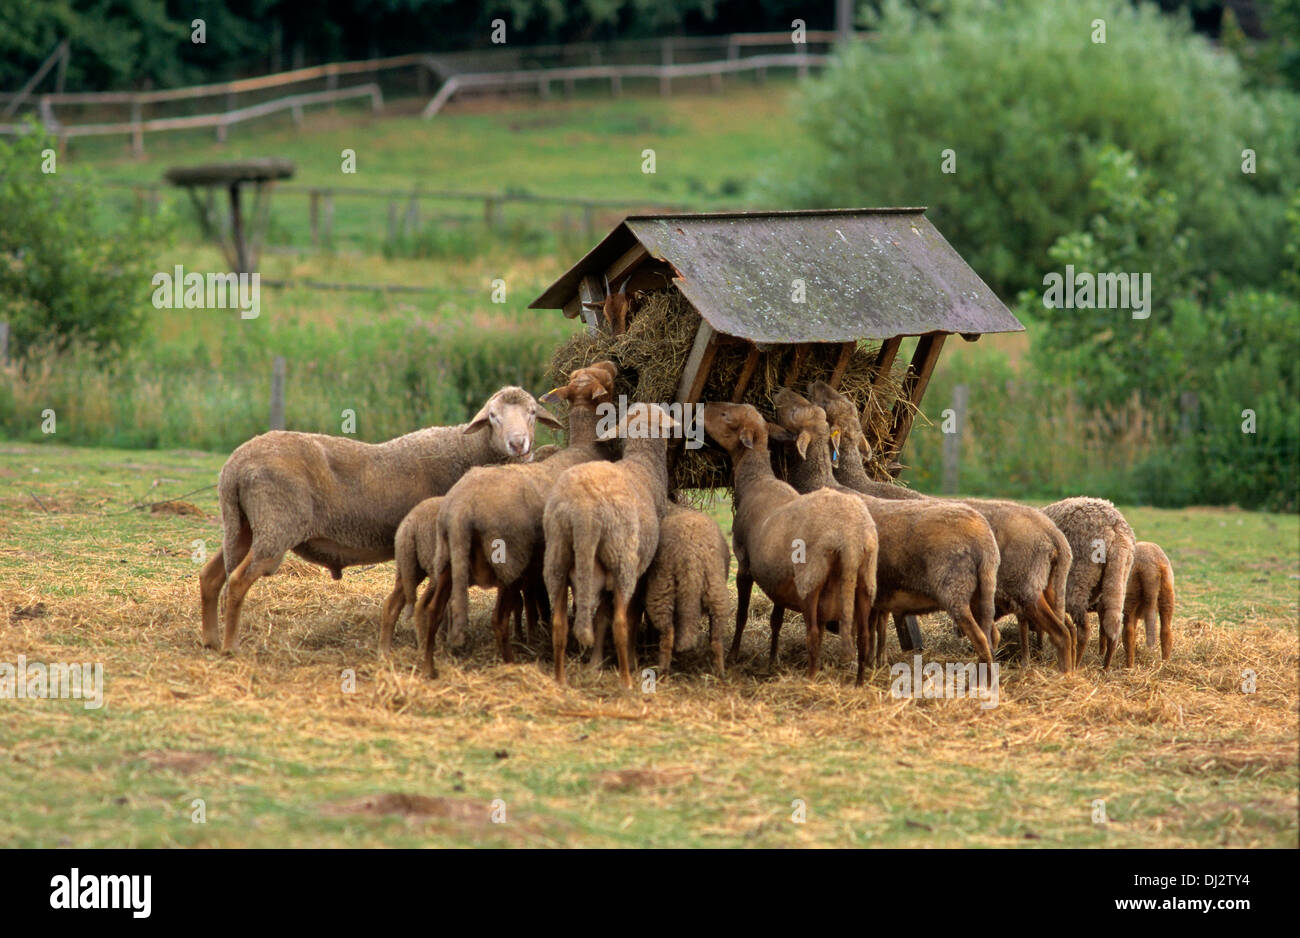 Red-head sheep, flock of sheep in a manger, Rotkopfschaf, Schafherde an Futterkrippe Stock Photo